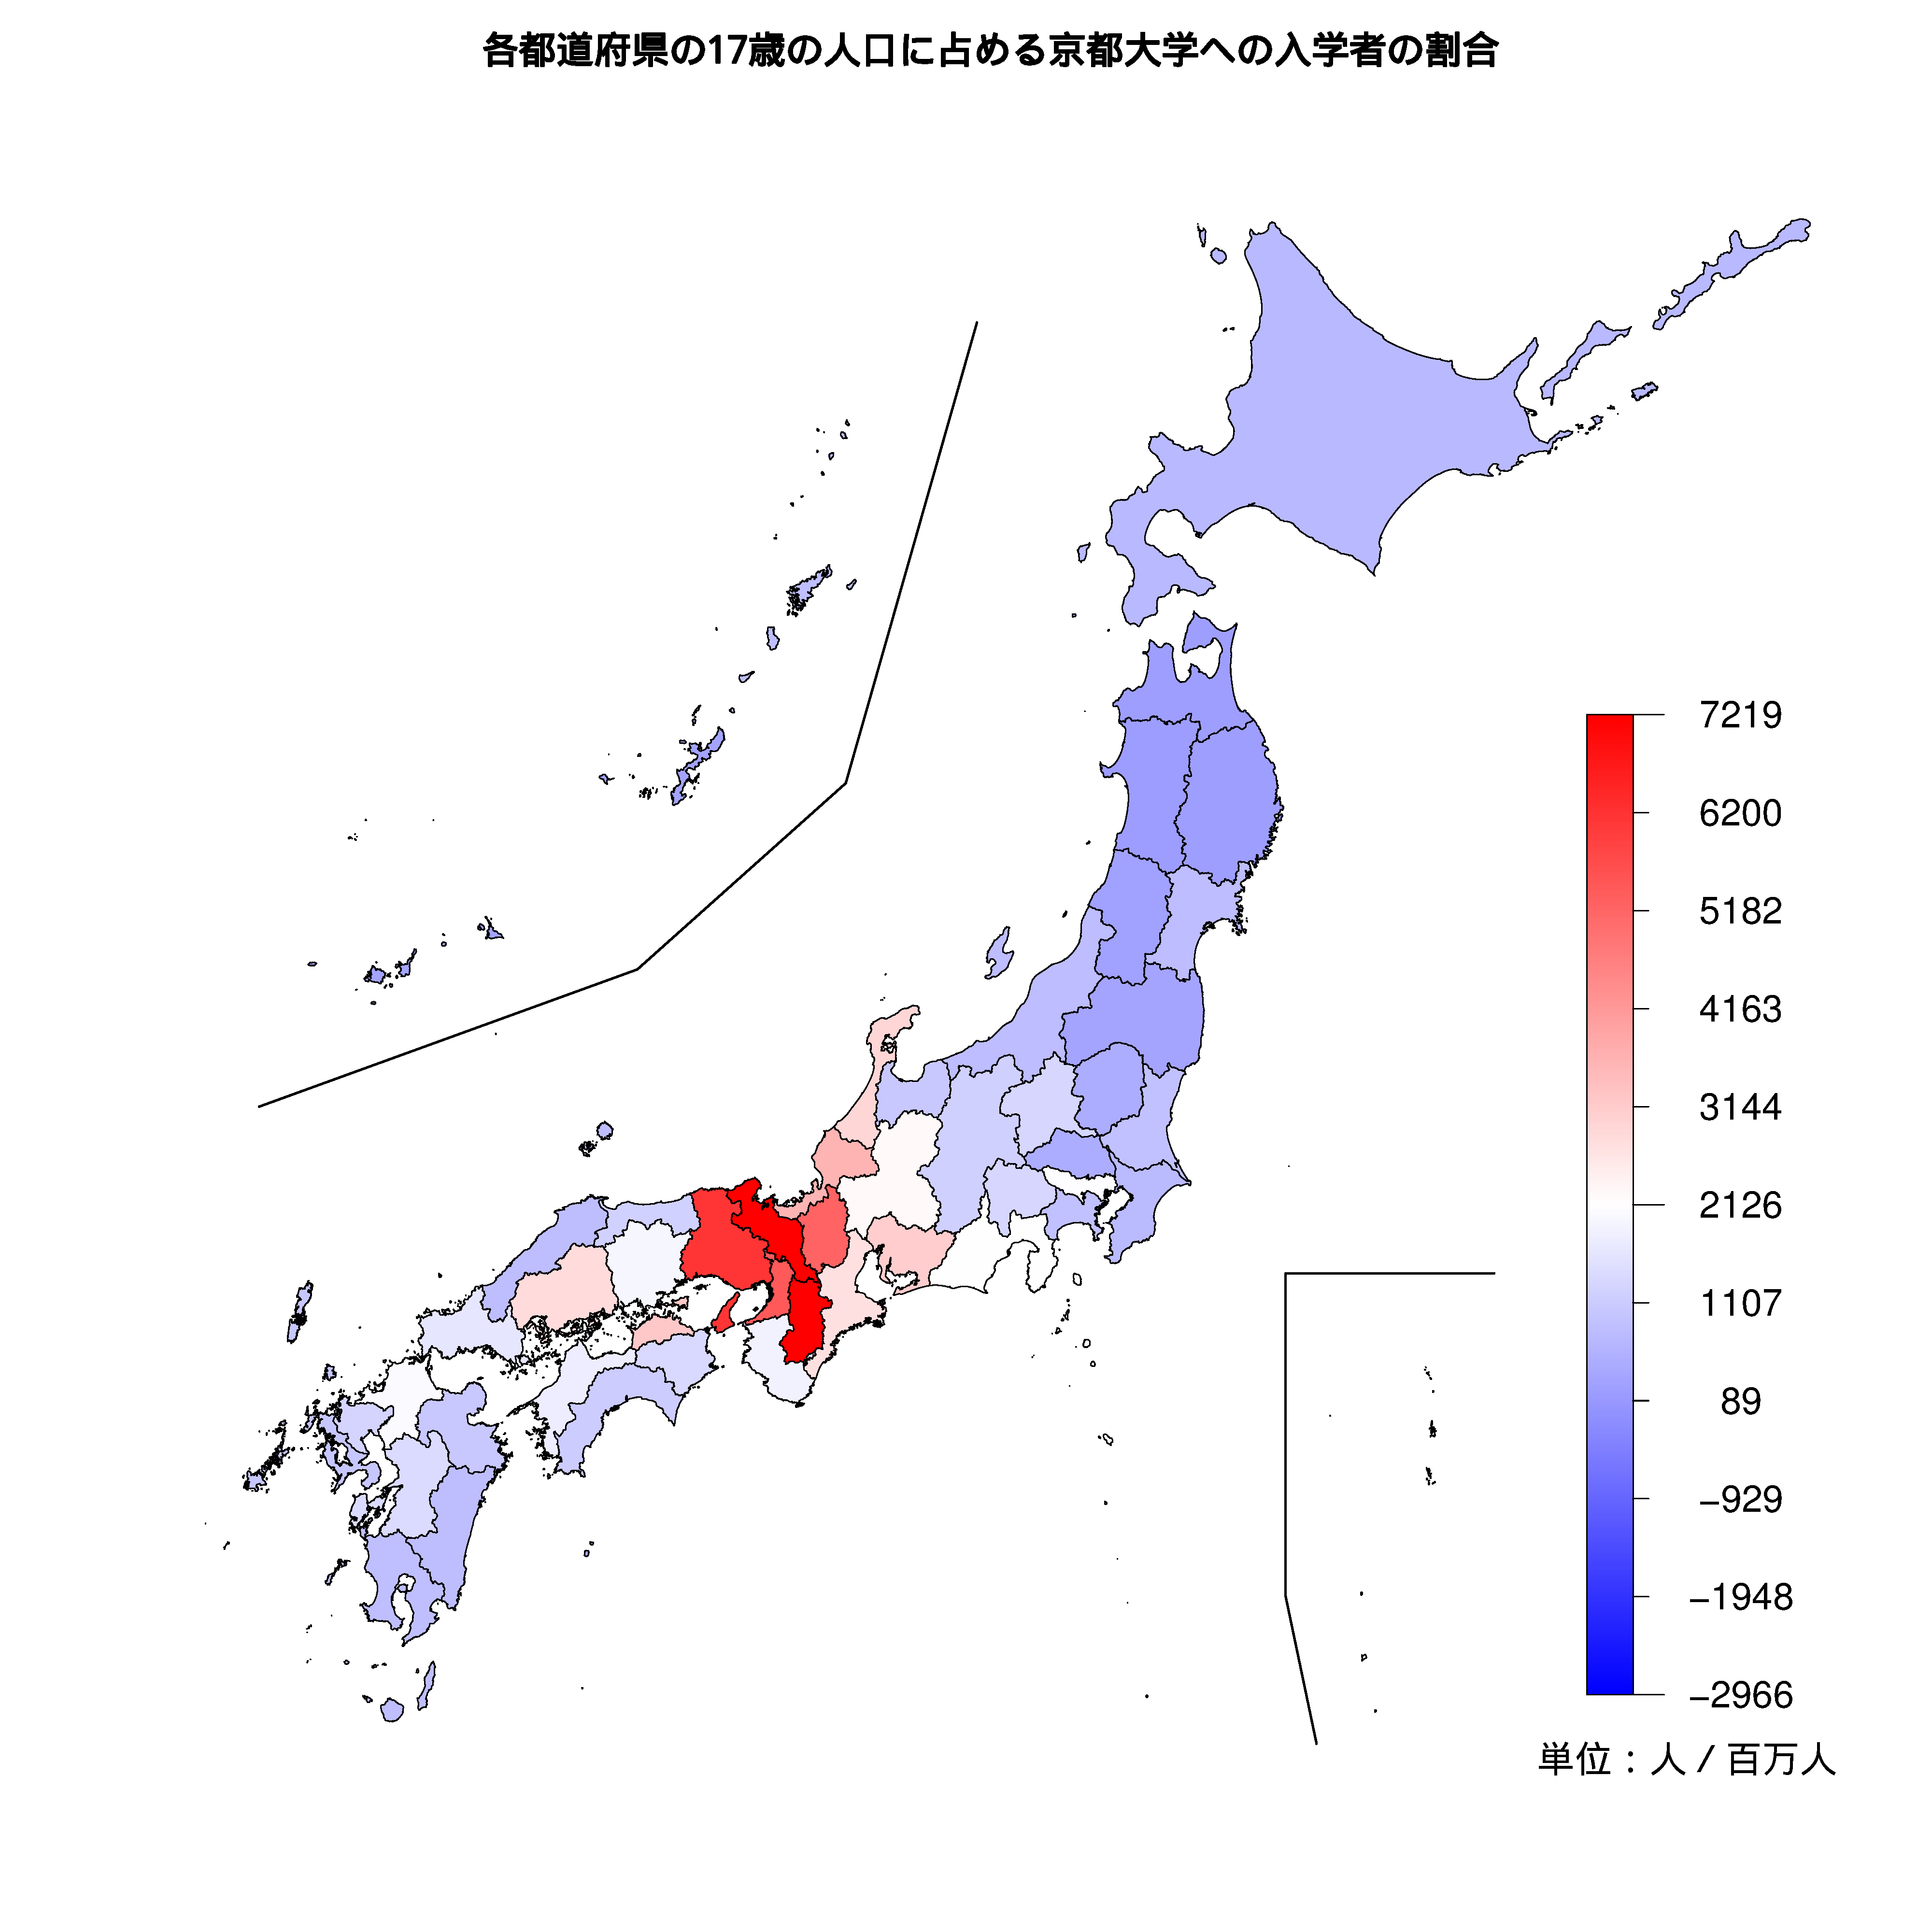 京都大学への入学者が多い都道府県の色分け地図